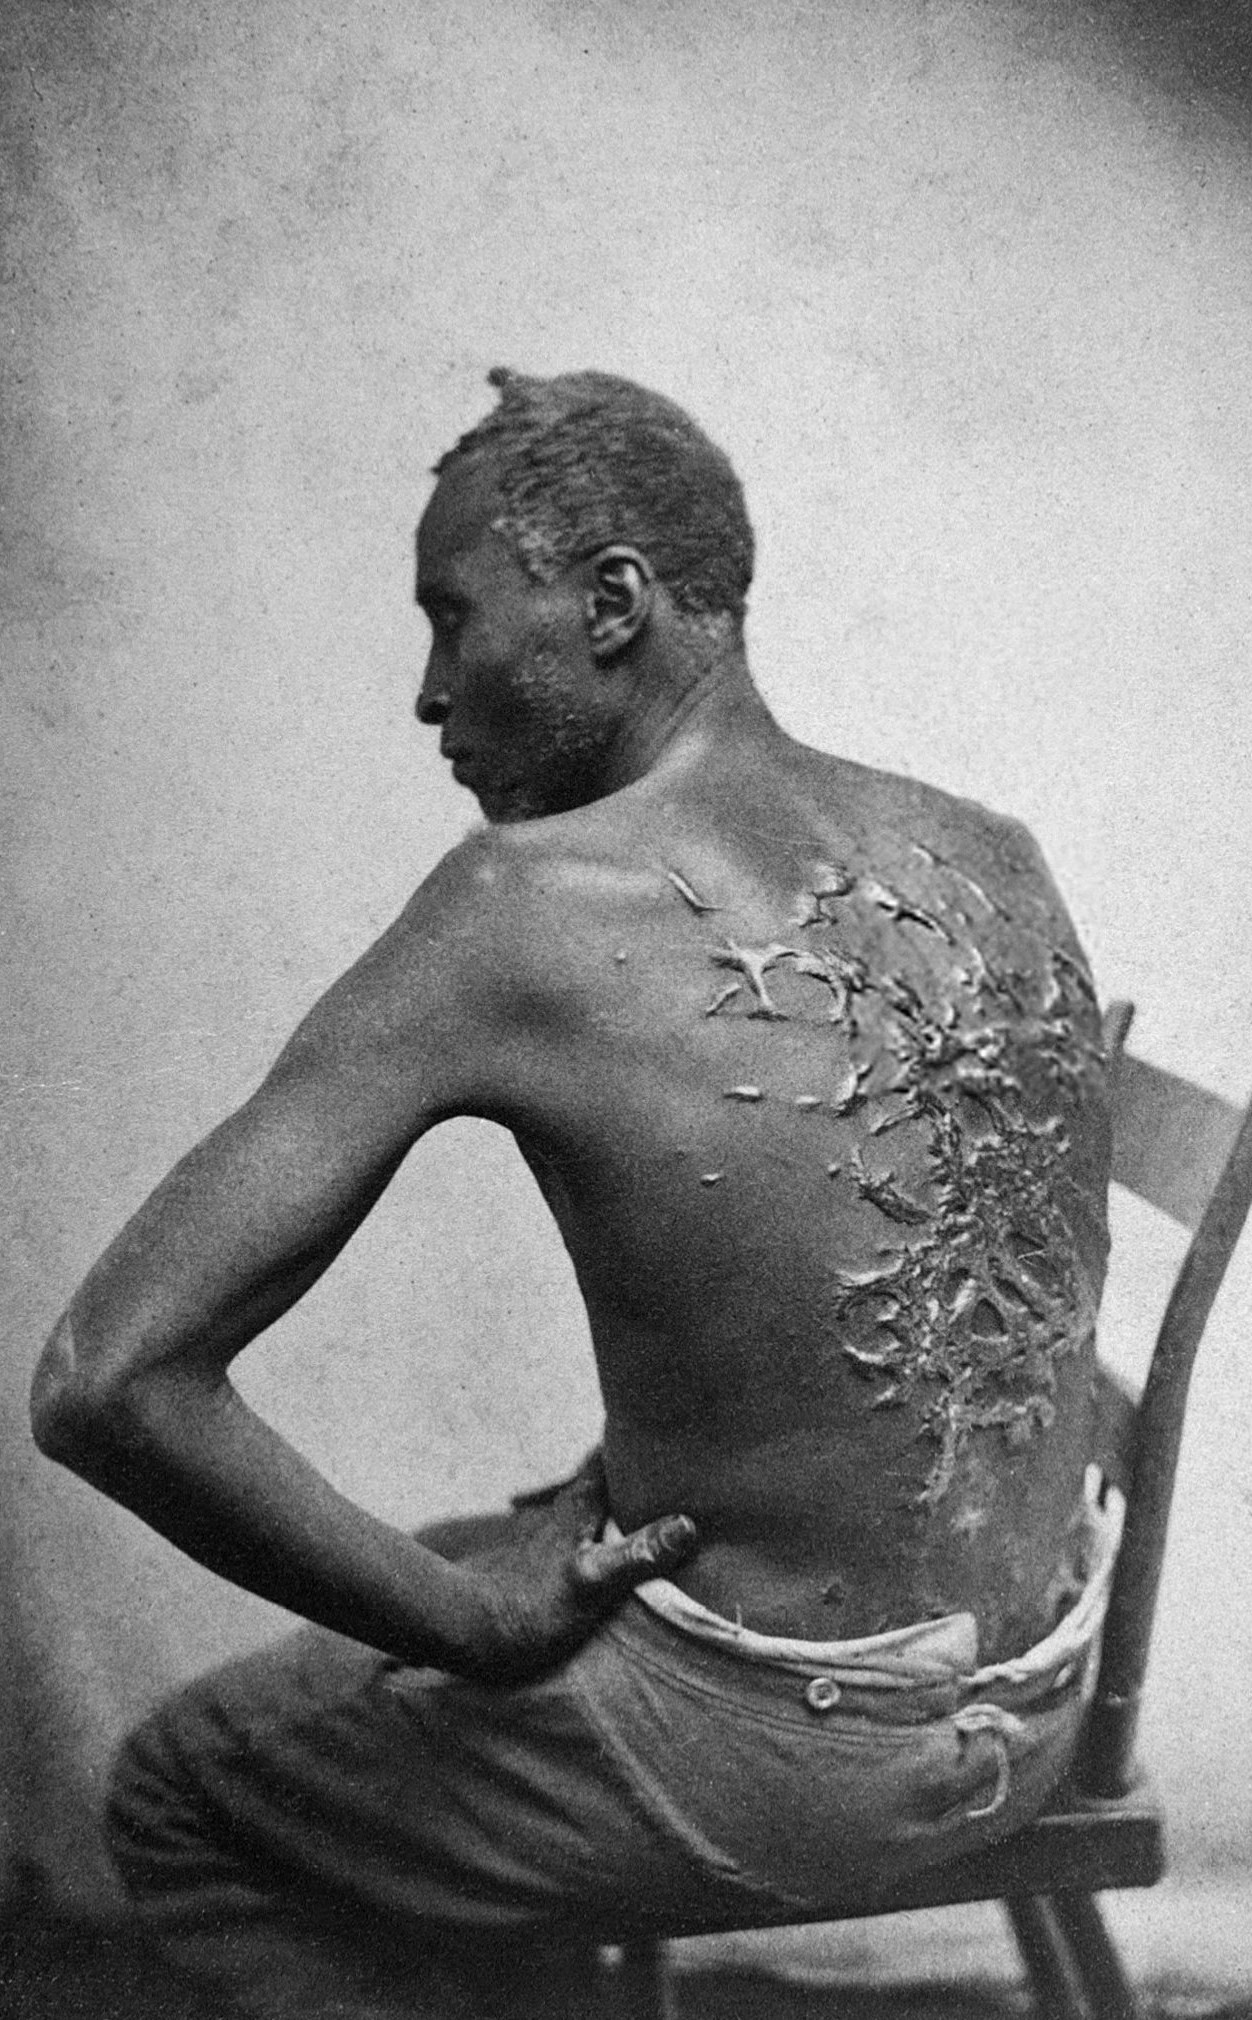 Mathew Brady, “Gordon, scourged back” (1863)